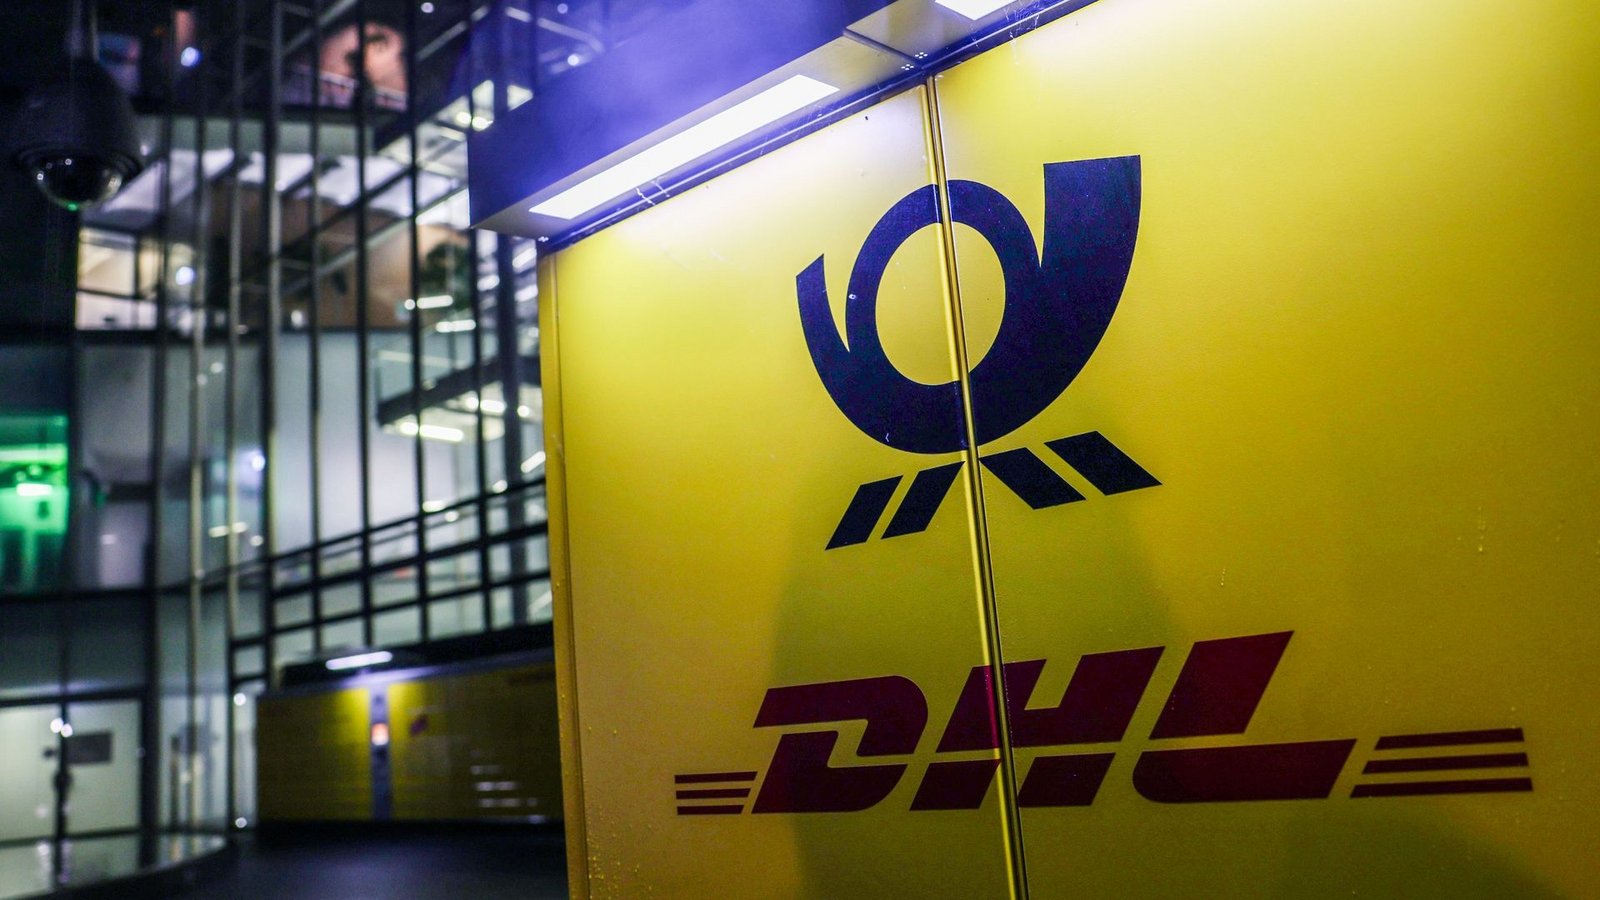 Der Logistikkonzern DHL kommt auf seinem Elektrokurs voran. Das wurde nun auf der Hauptversammlung in Bonn mitgeteilt.Foto: Oliver Berg/dpa